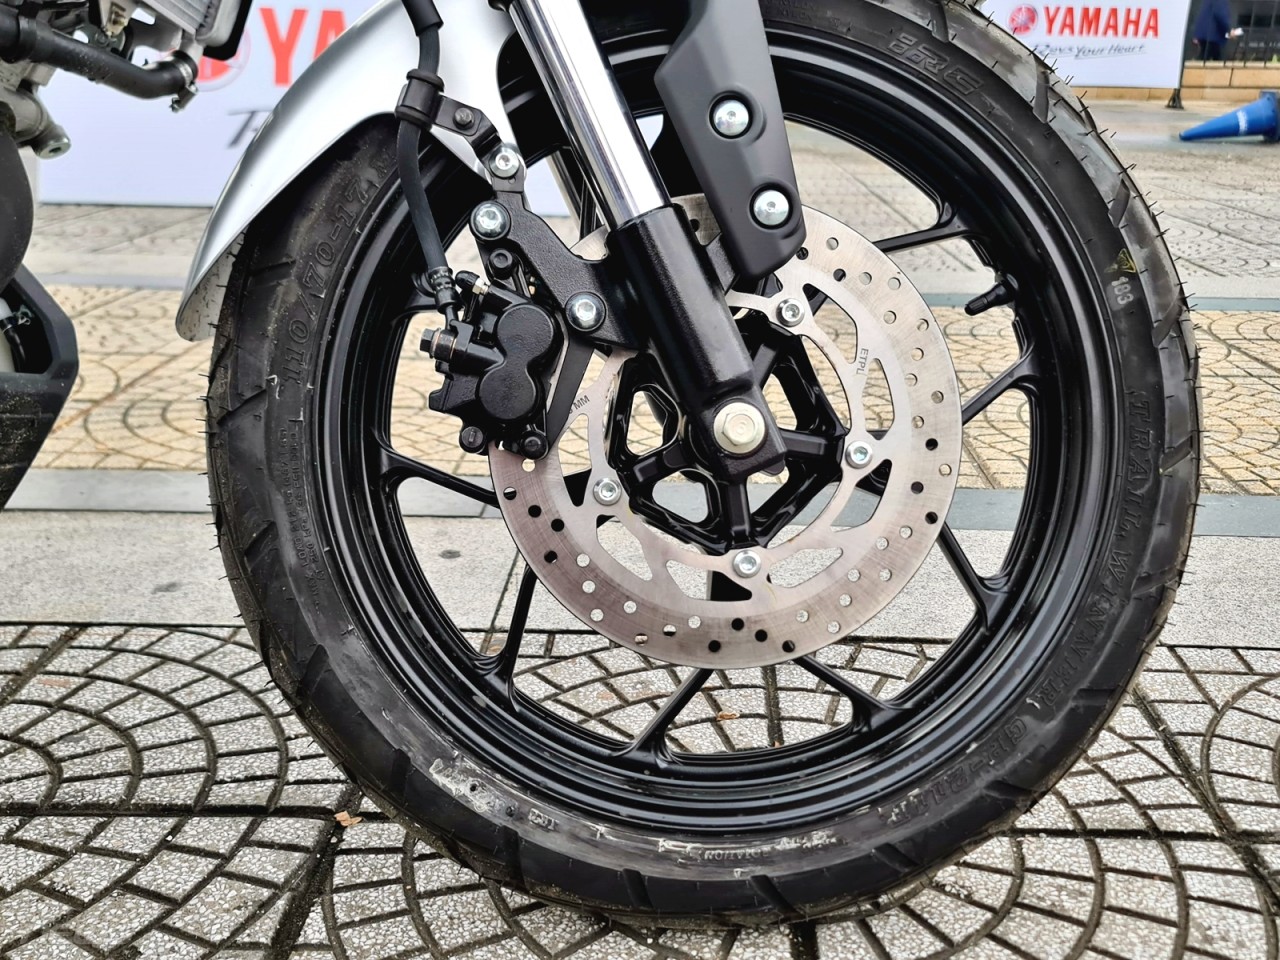 Cận cảnh Yamaha XS155R - xe mô tô mang phong cách Neo-Retro